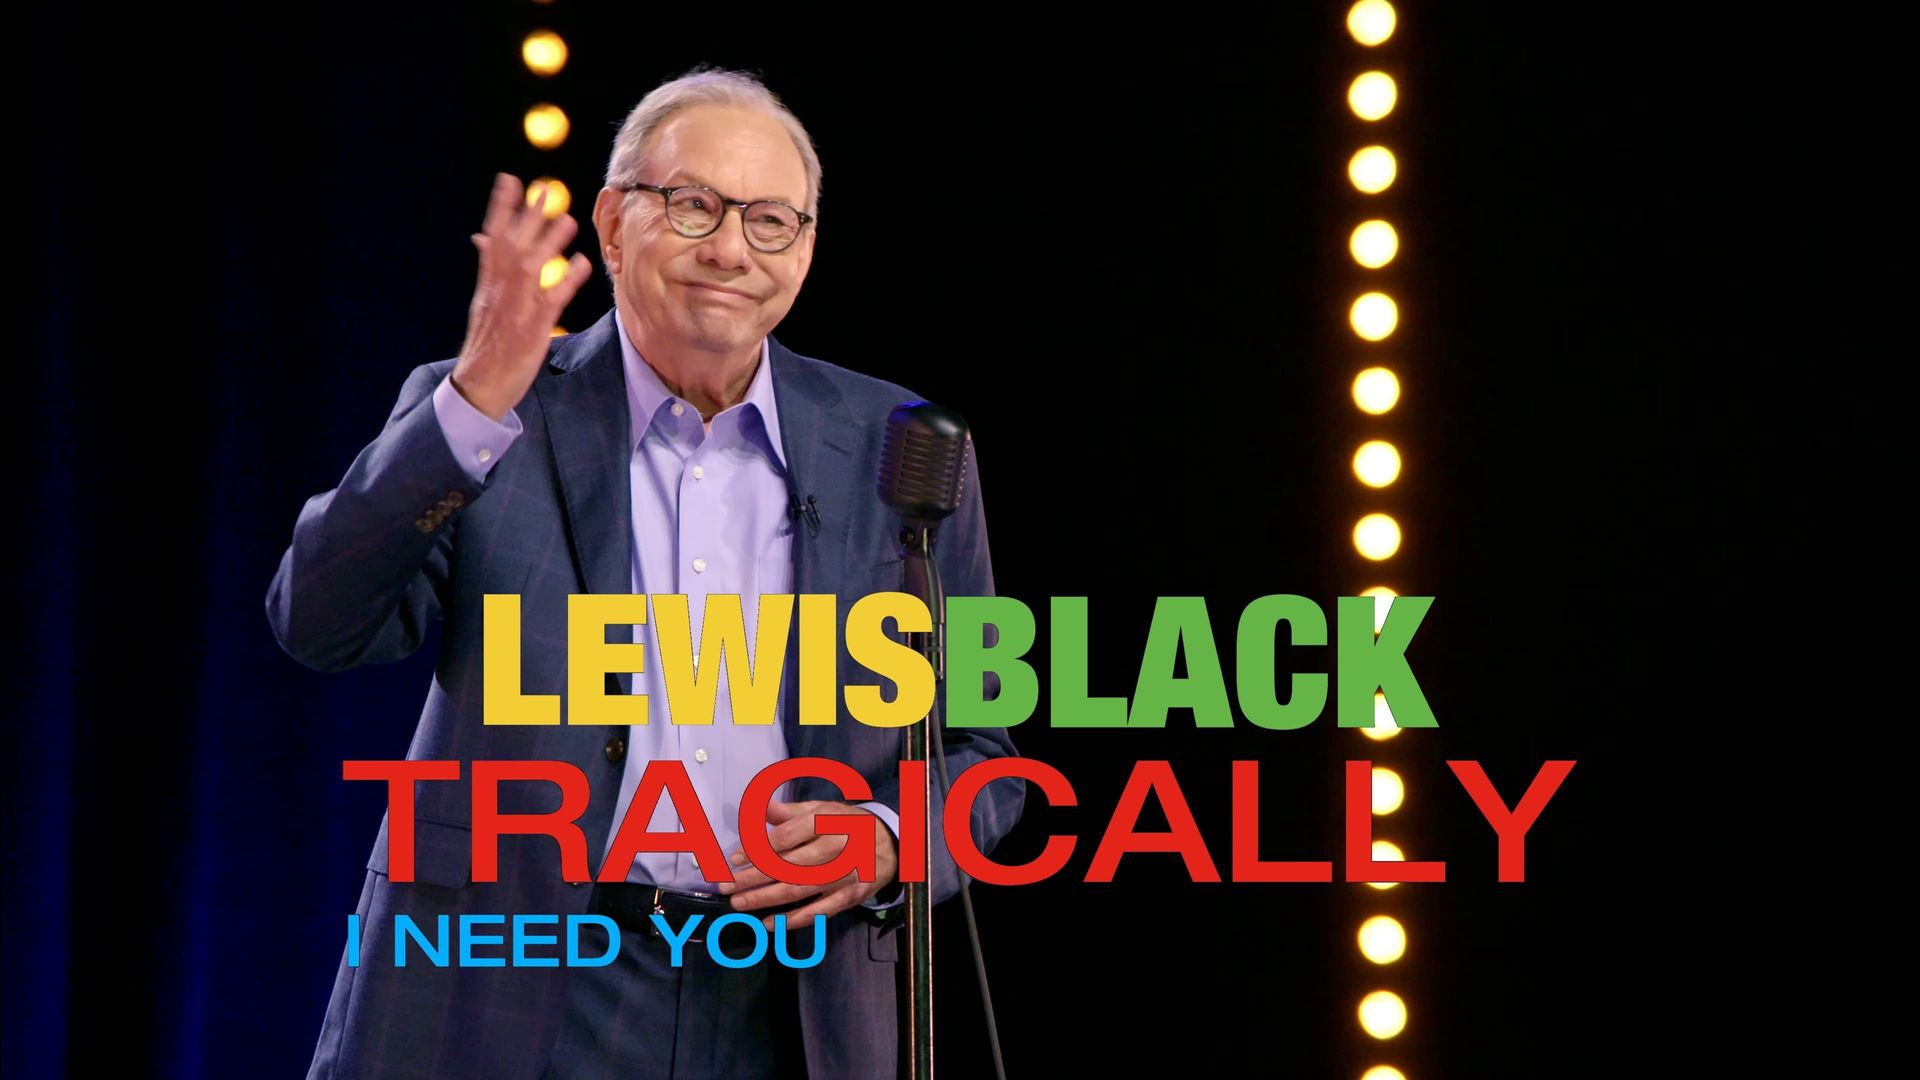 Lewis Black: Tragically, I Need You background